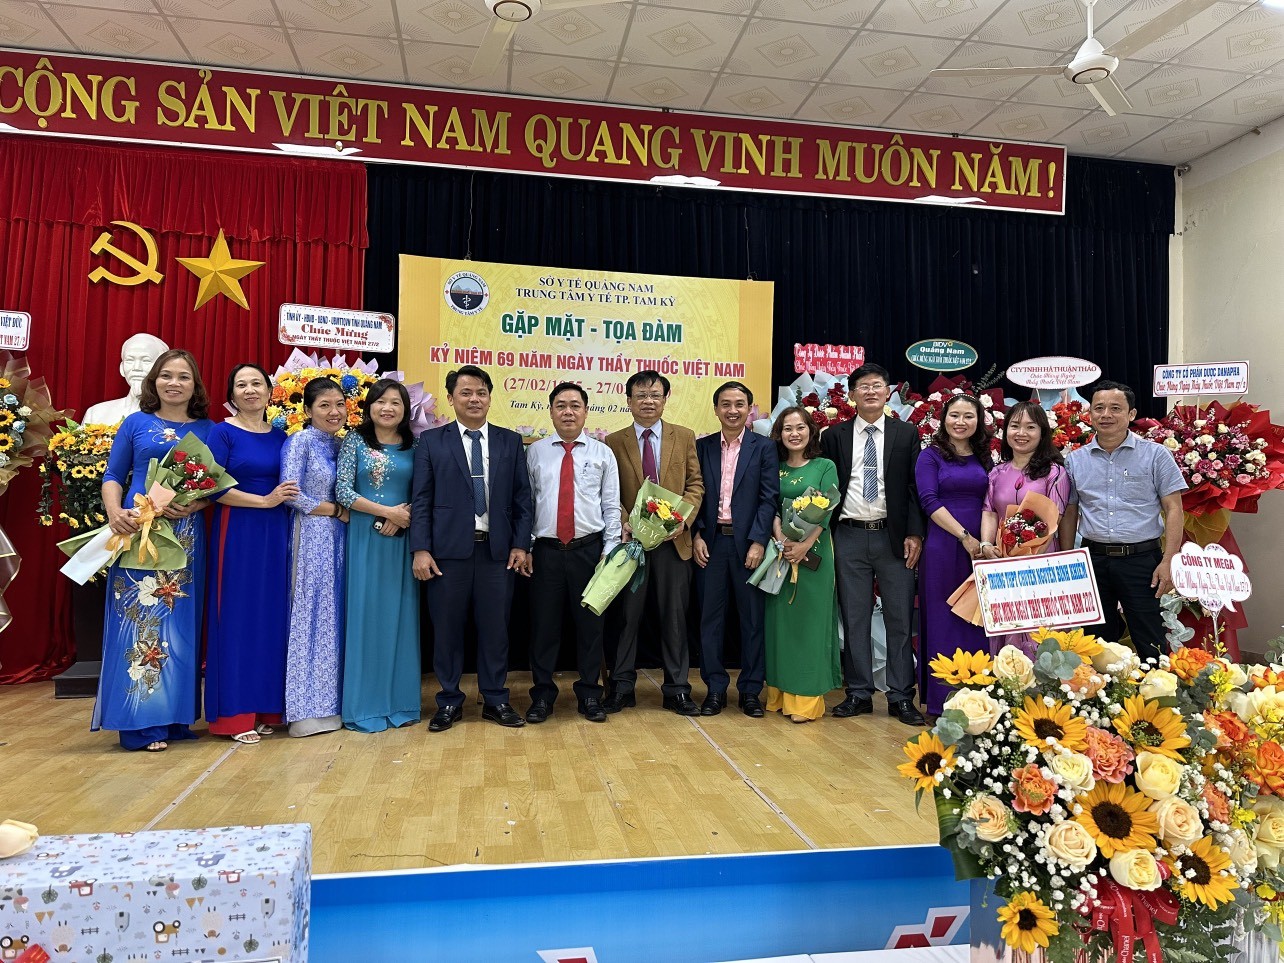 Quảng Nam: Trung tâm Y tế TP Tam Kỳ tổ chức gặp mặt kỷ niệm 69 năm ngày Thầy thuốc Việt Nam